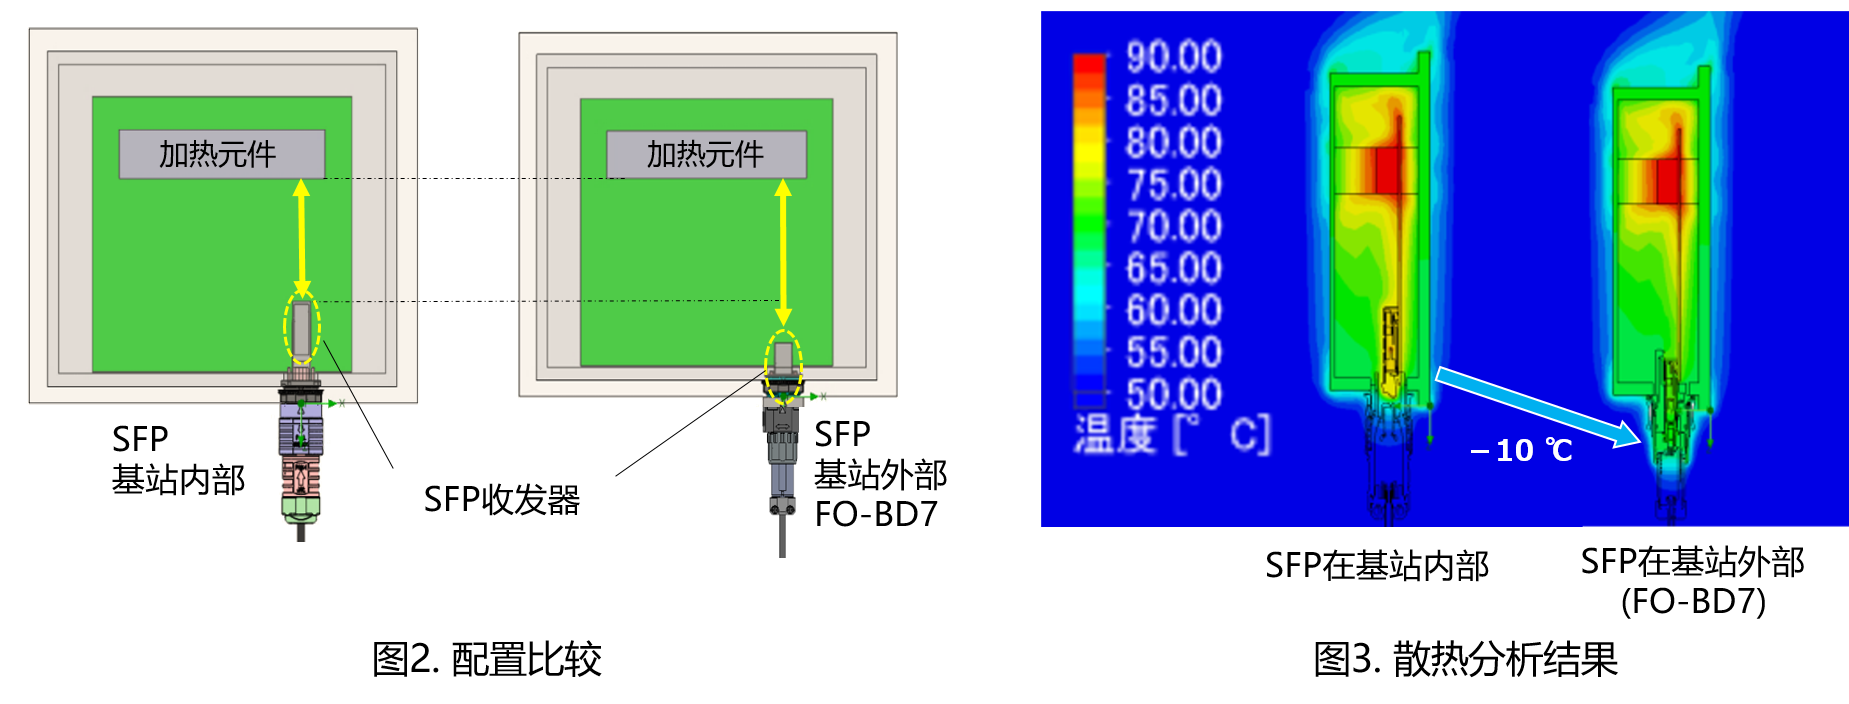 5G基站连接器FO-BD系列